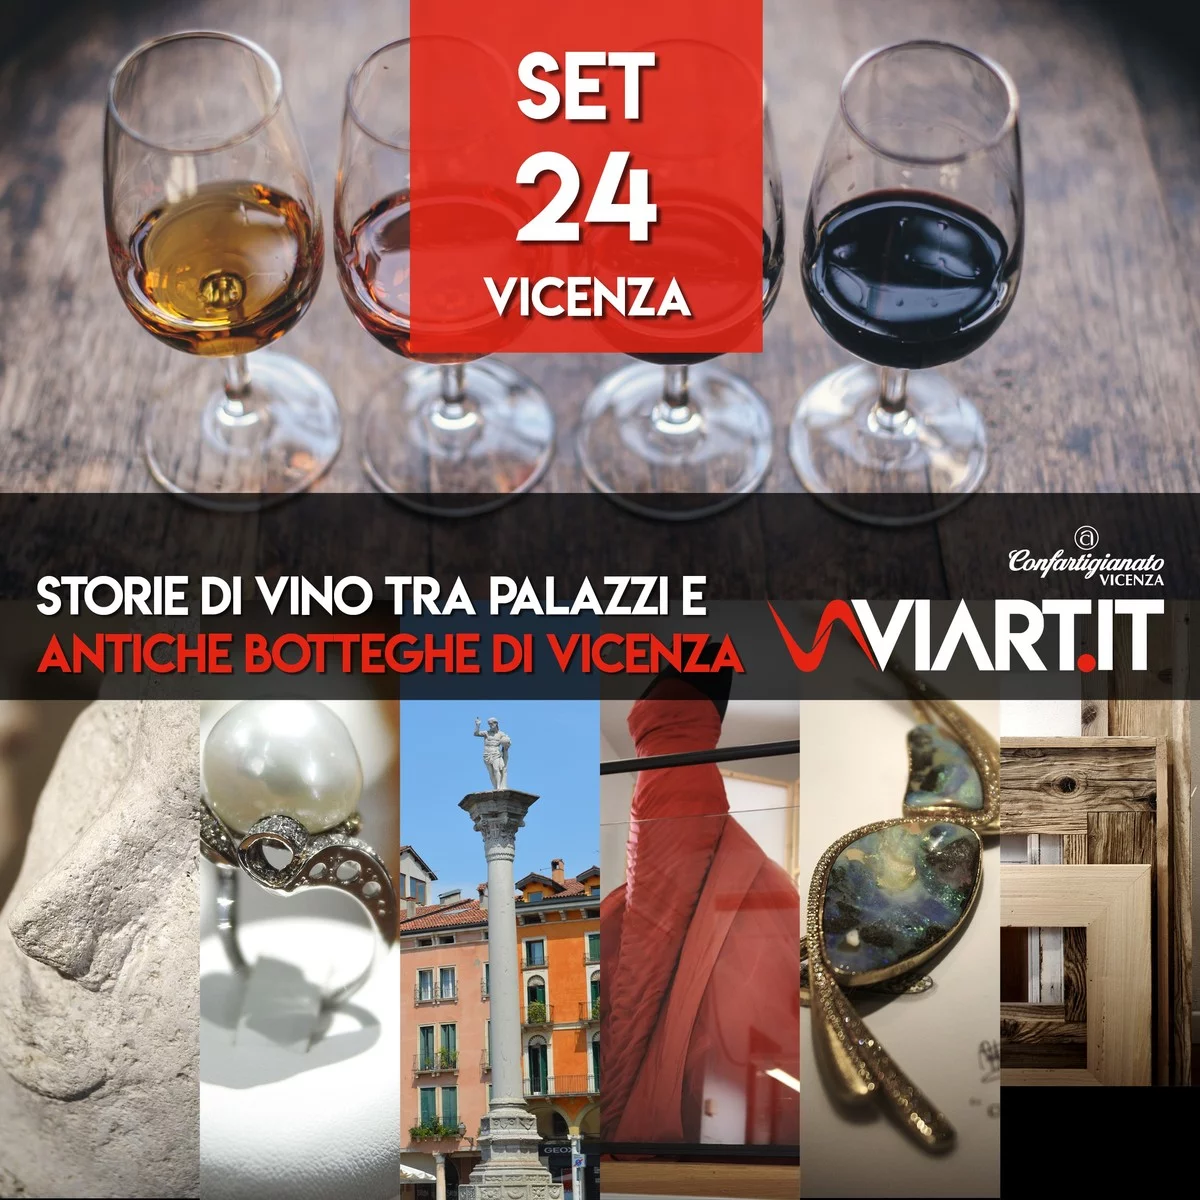 Storie di vino tra palazzi e antiche botteghe di Vicenza